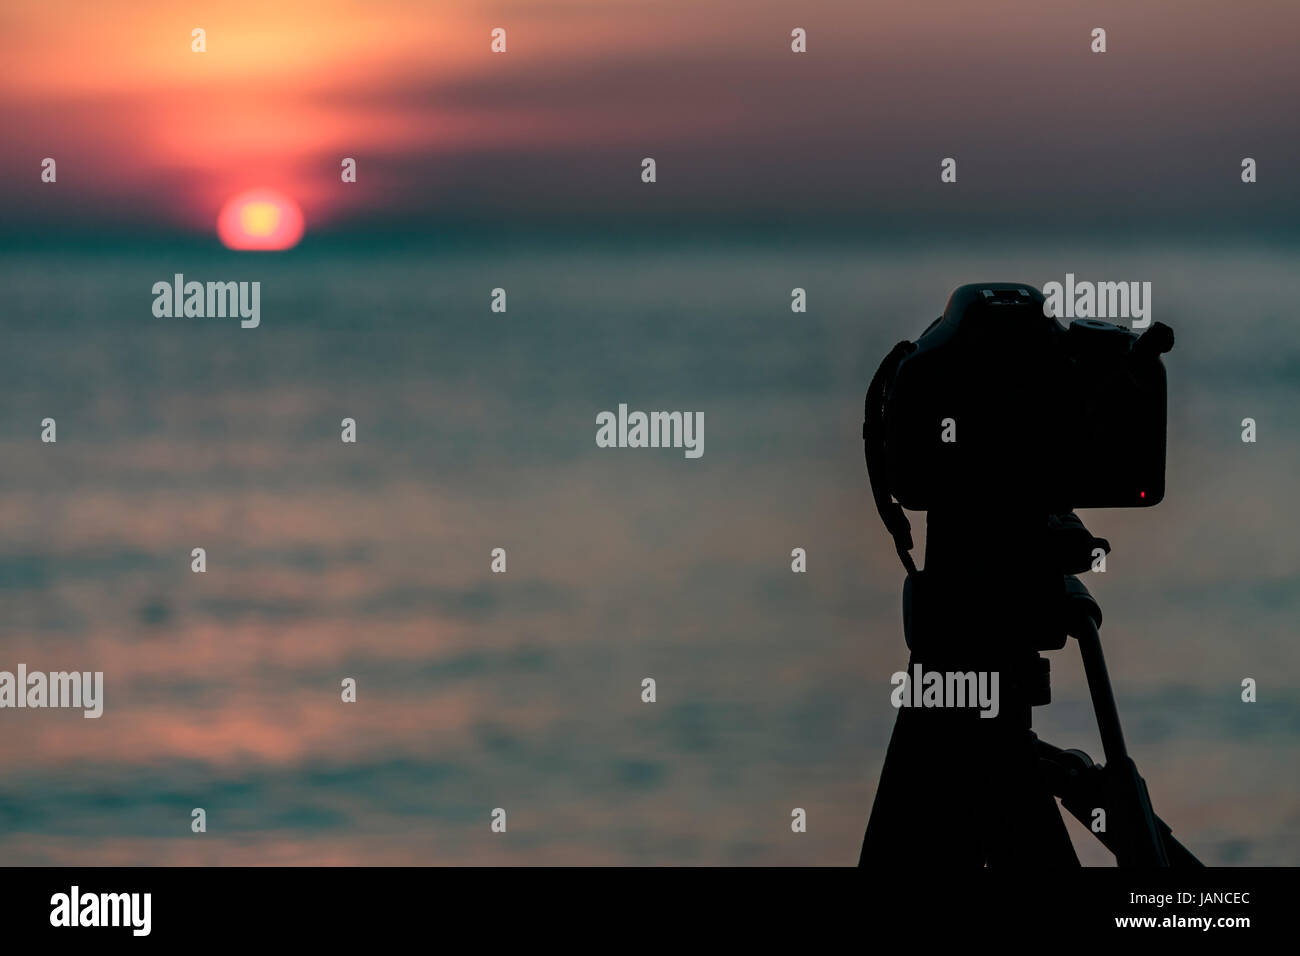 Kamera auf ein Stativ, um die Sonne und die Landschaft fotografieren Stockfoto